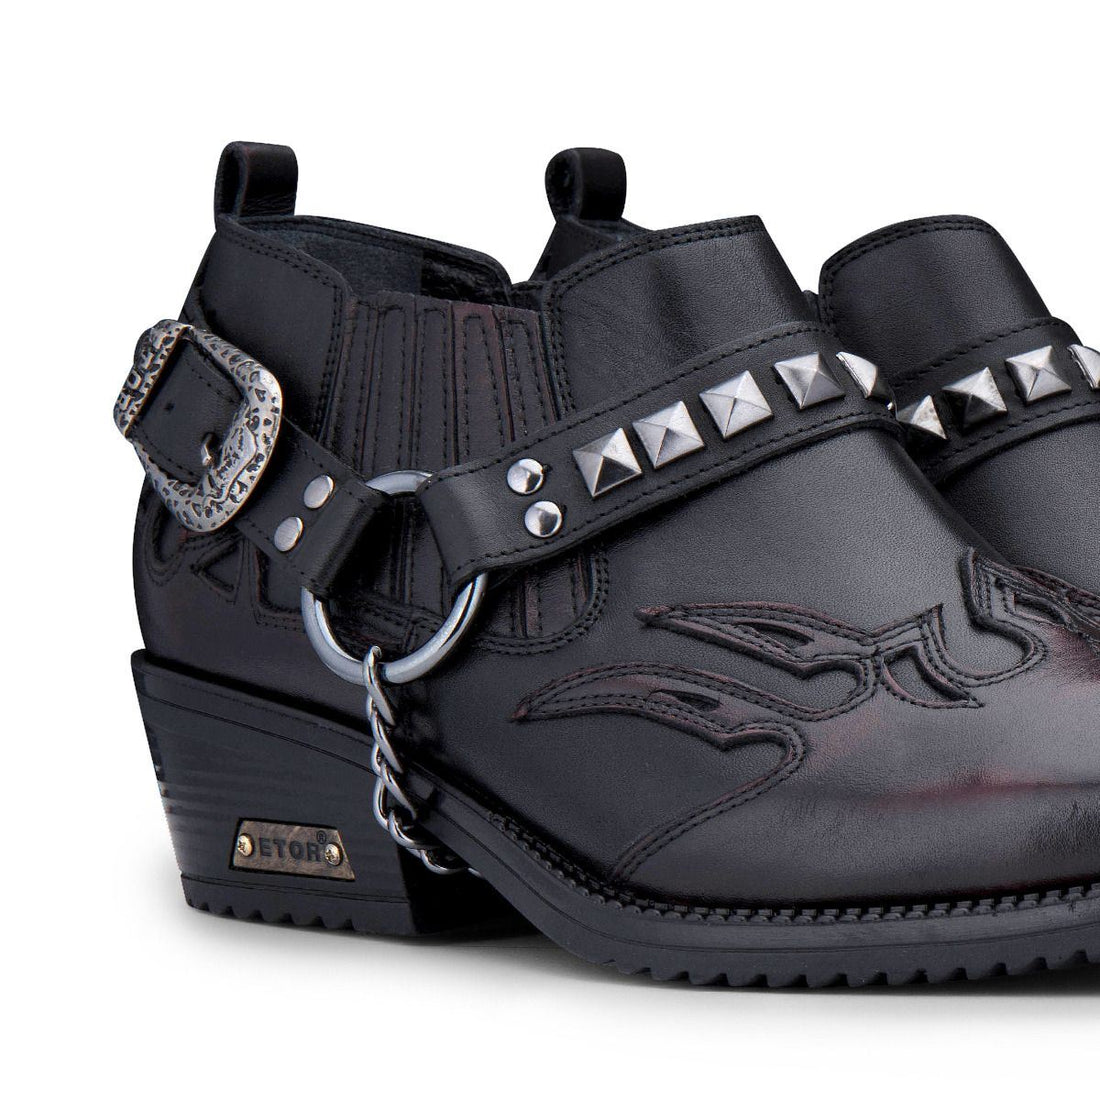 Mens Black Leather Winklepicker Studded Western Biker Boots - Upperclass Fashions 